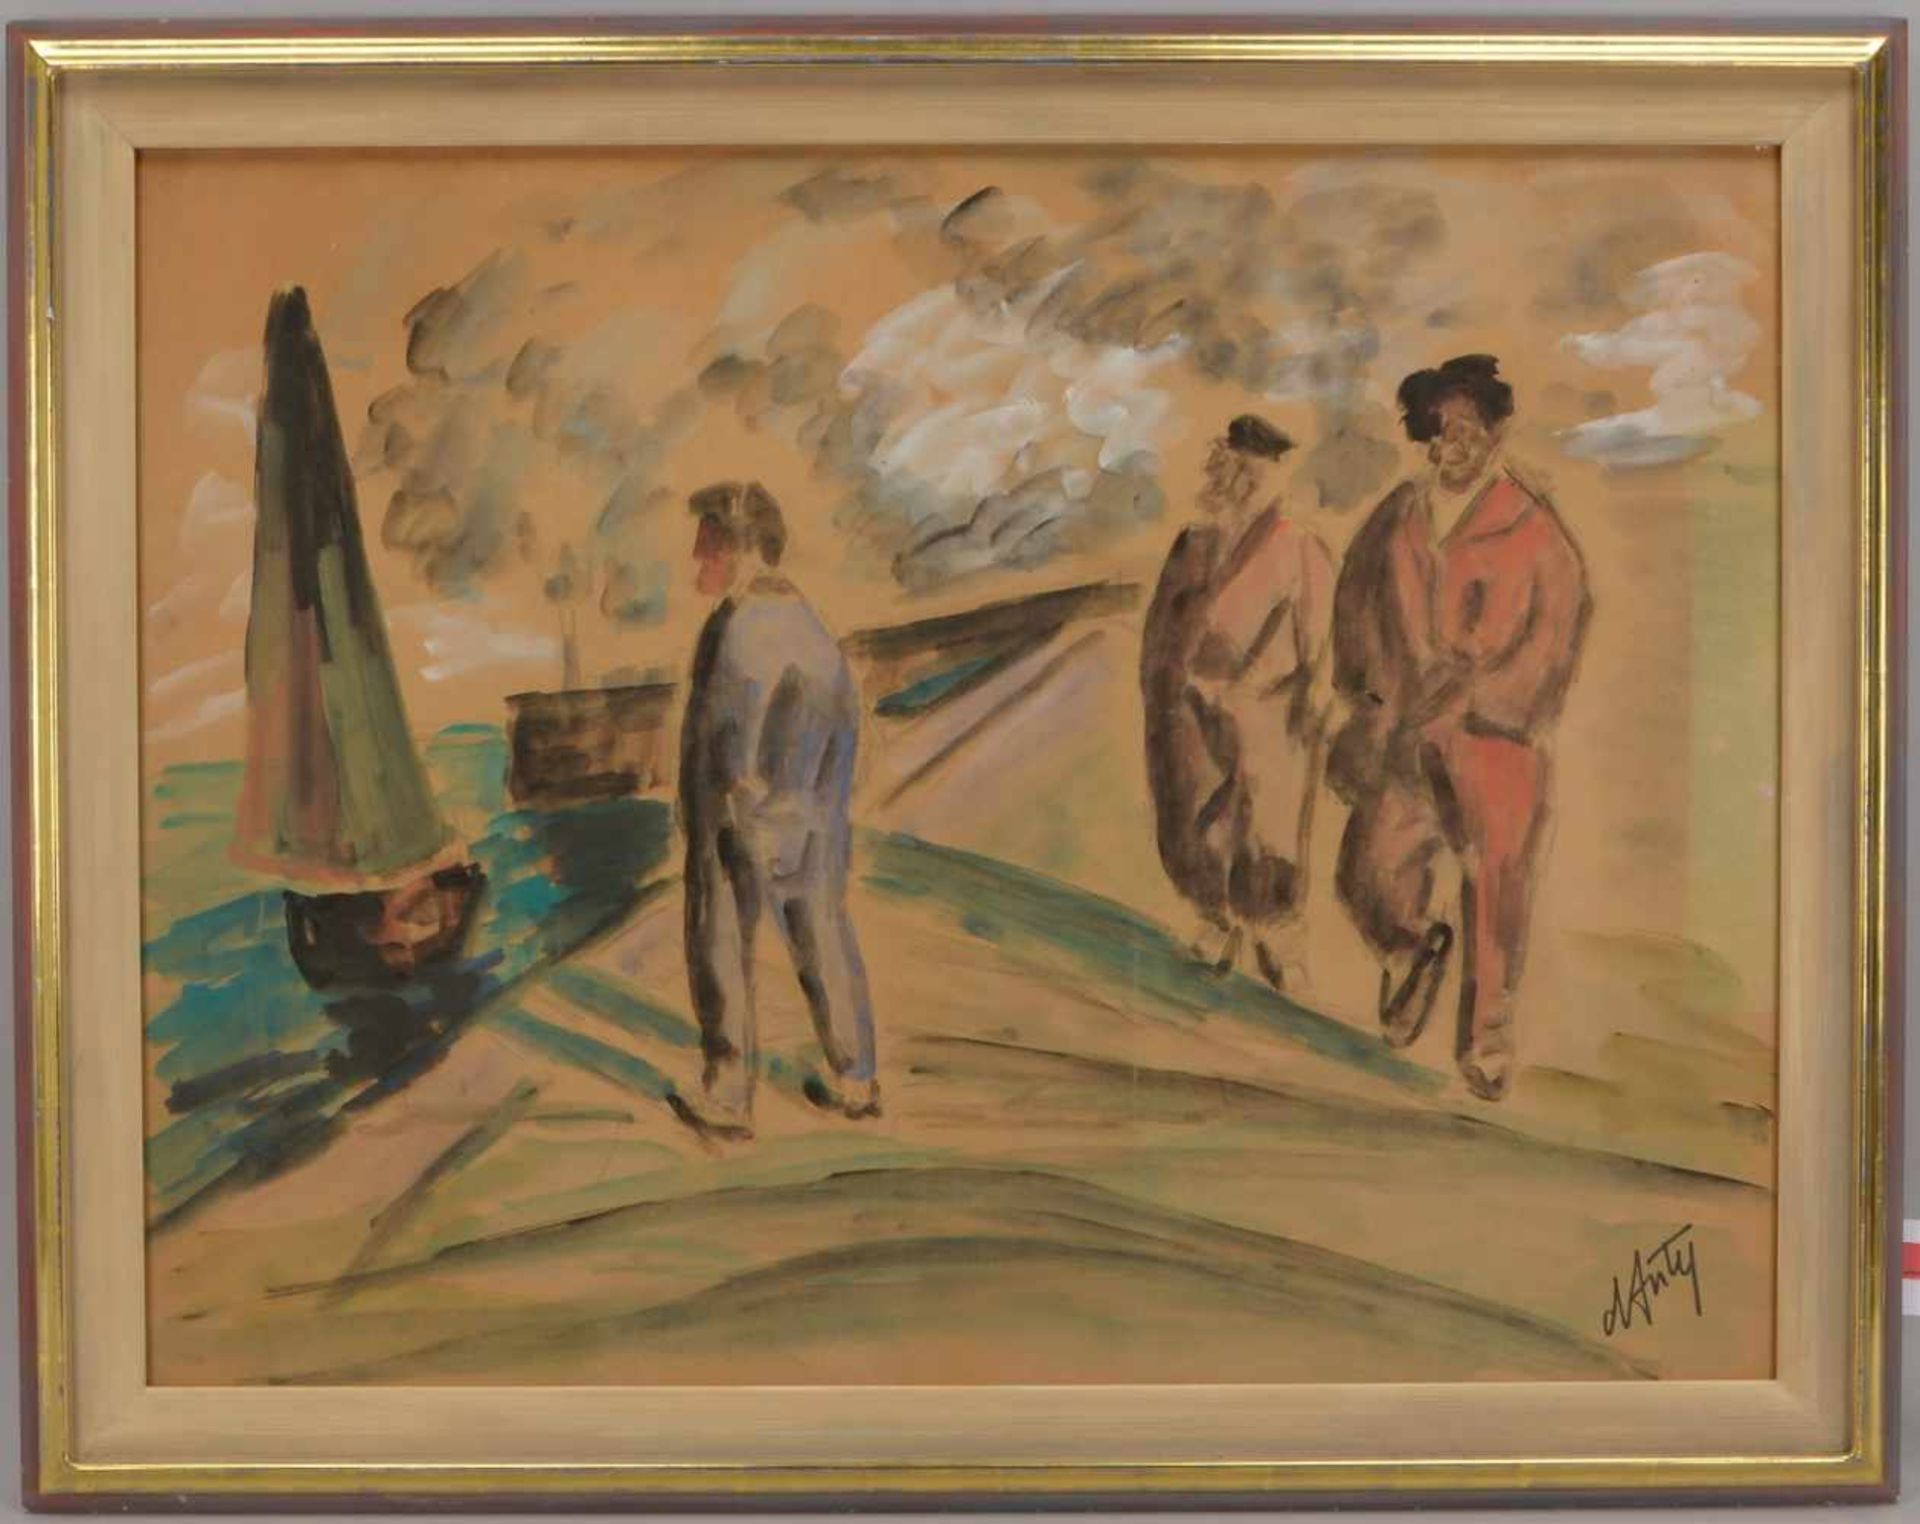 D'Anty, Henry Maurice (1910 - 1998, Paris; Maler des Fauvismus), 'Personengruppe am Kai', Gouache